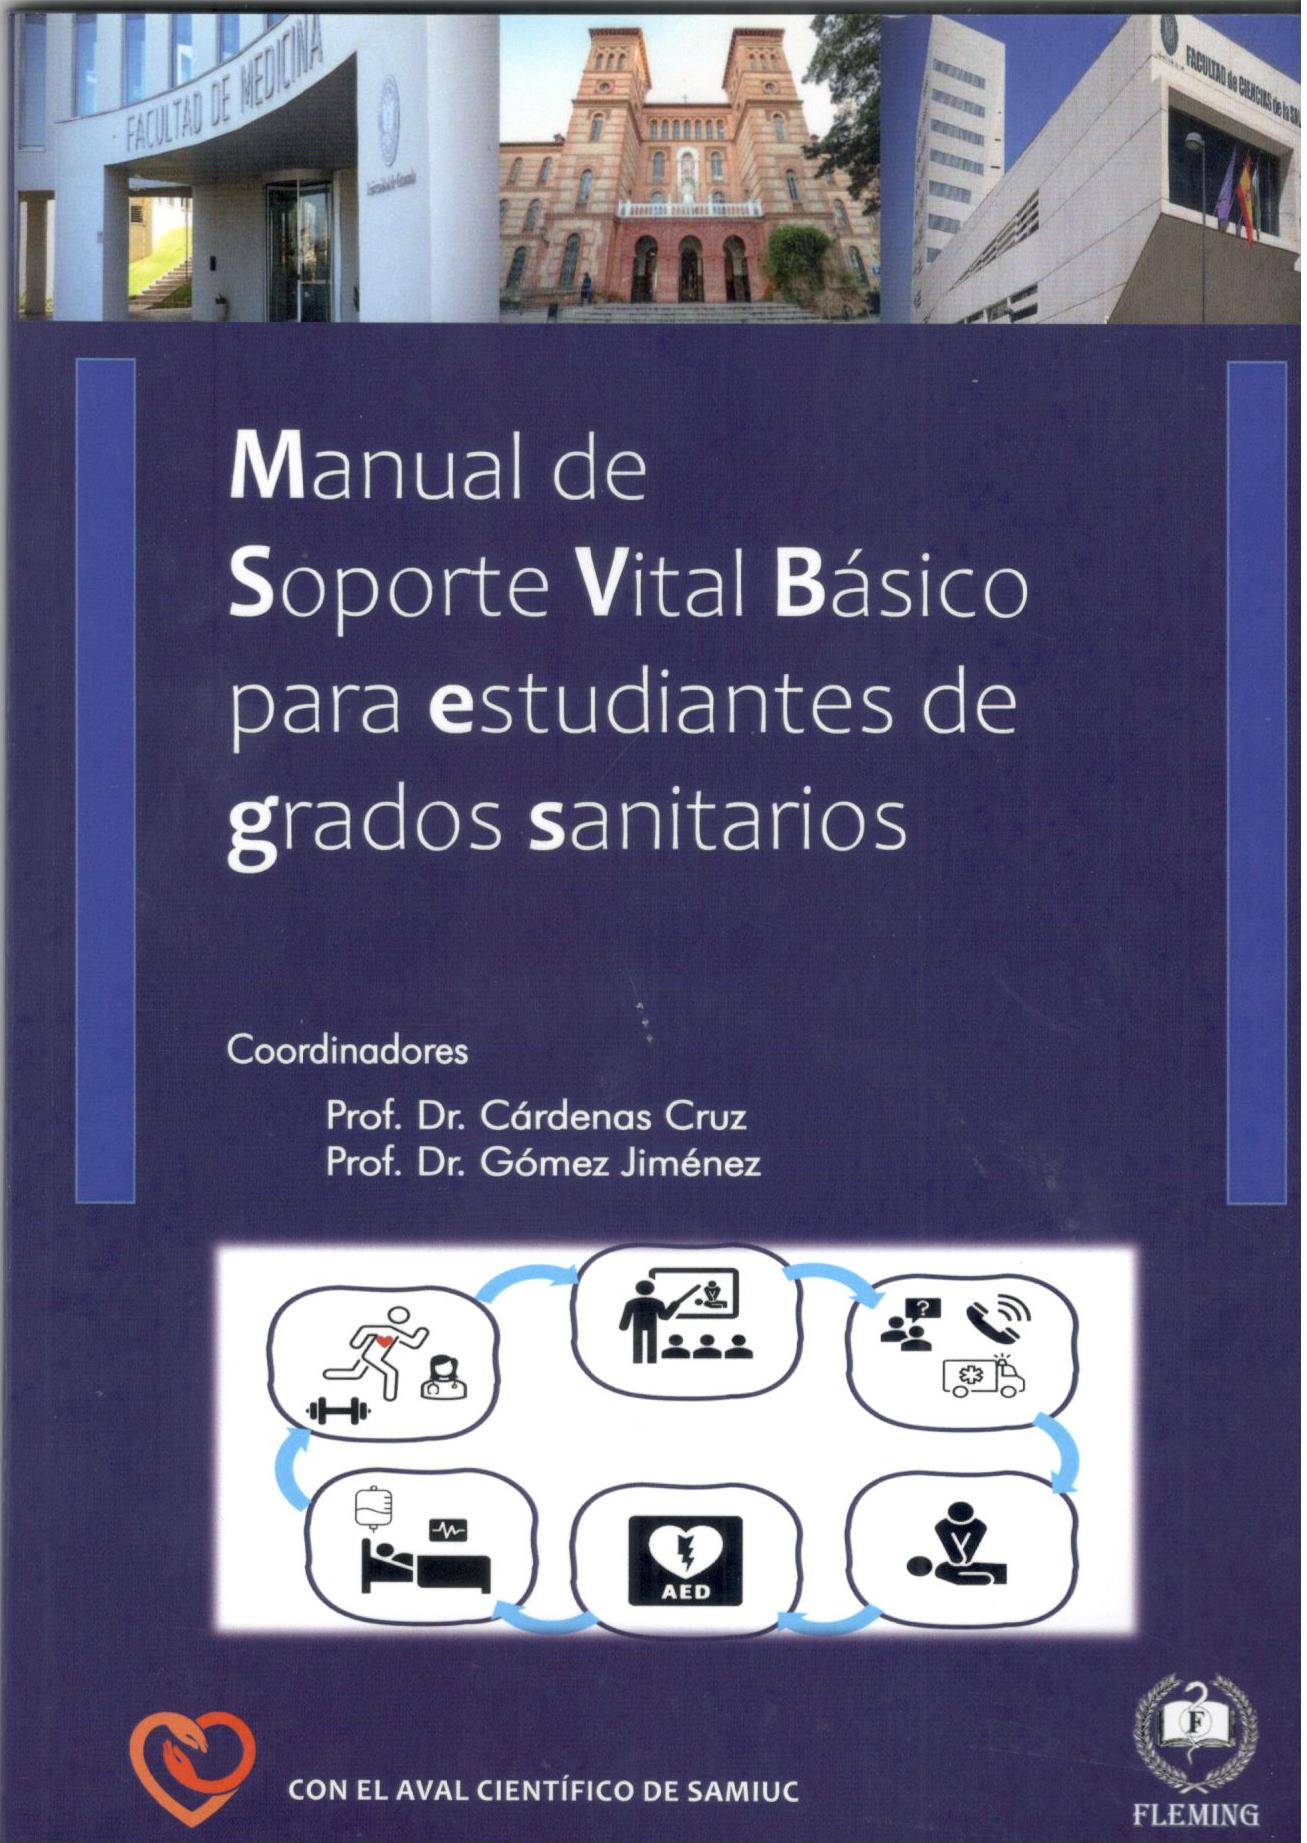 MANUAL DE SOPORTE VITAL BASICO PARA ESTUDIANTES DE GRADOS SANITARIOS